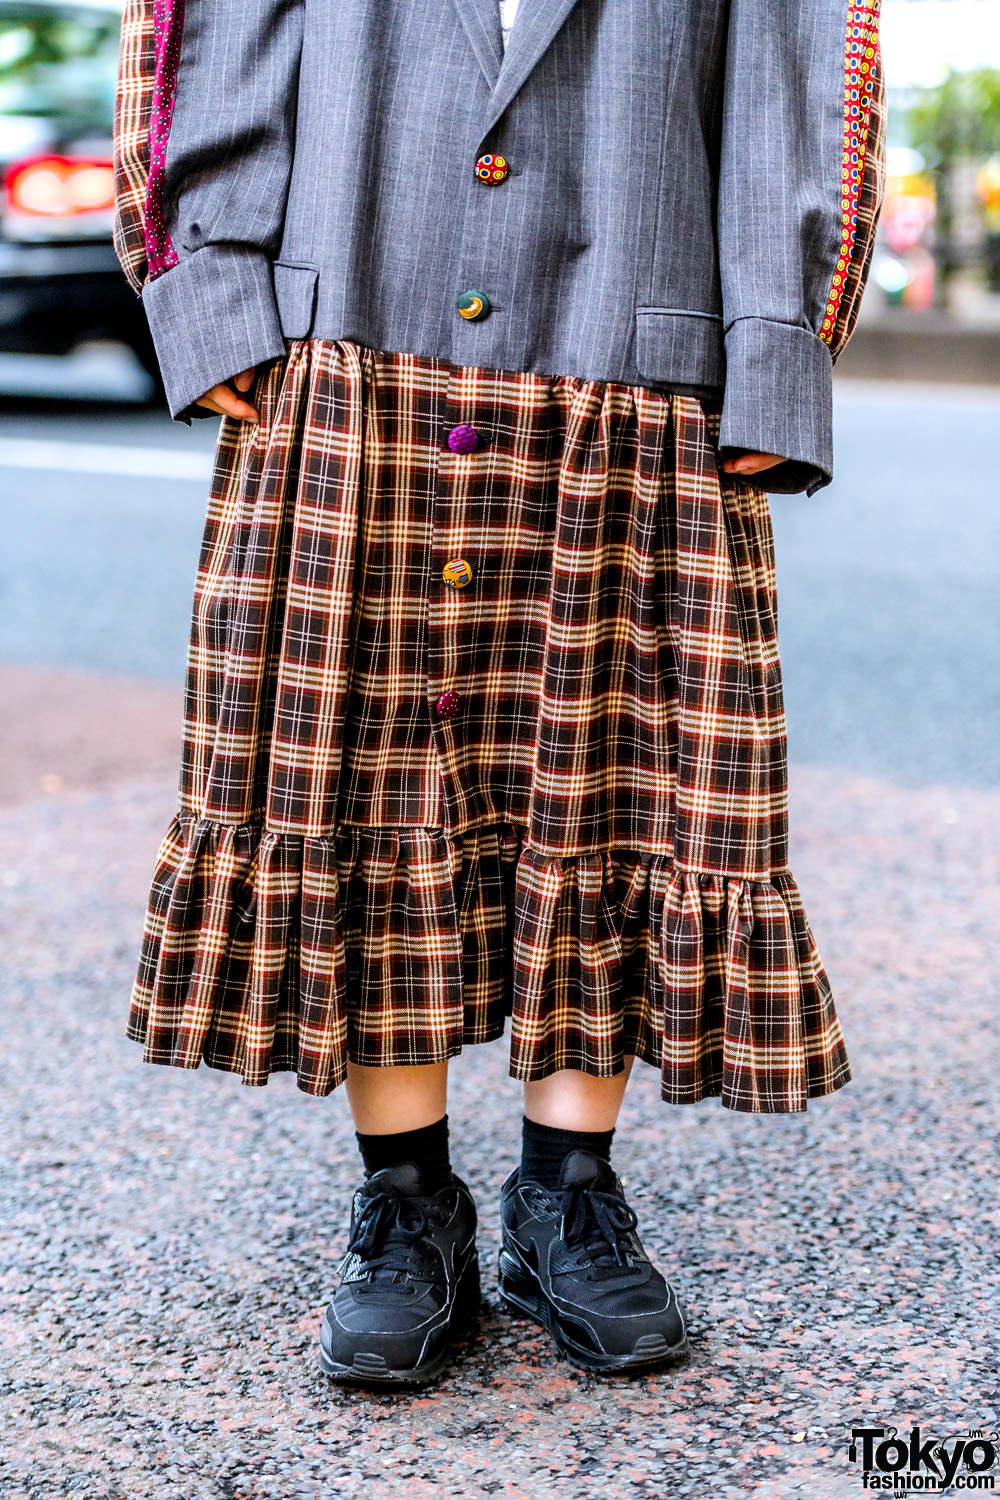 HEIHEI Harajuku Girls in Plaid Streetwear Styles w/ Blazer, Plaid Skirt ...